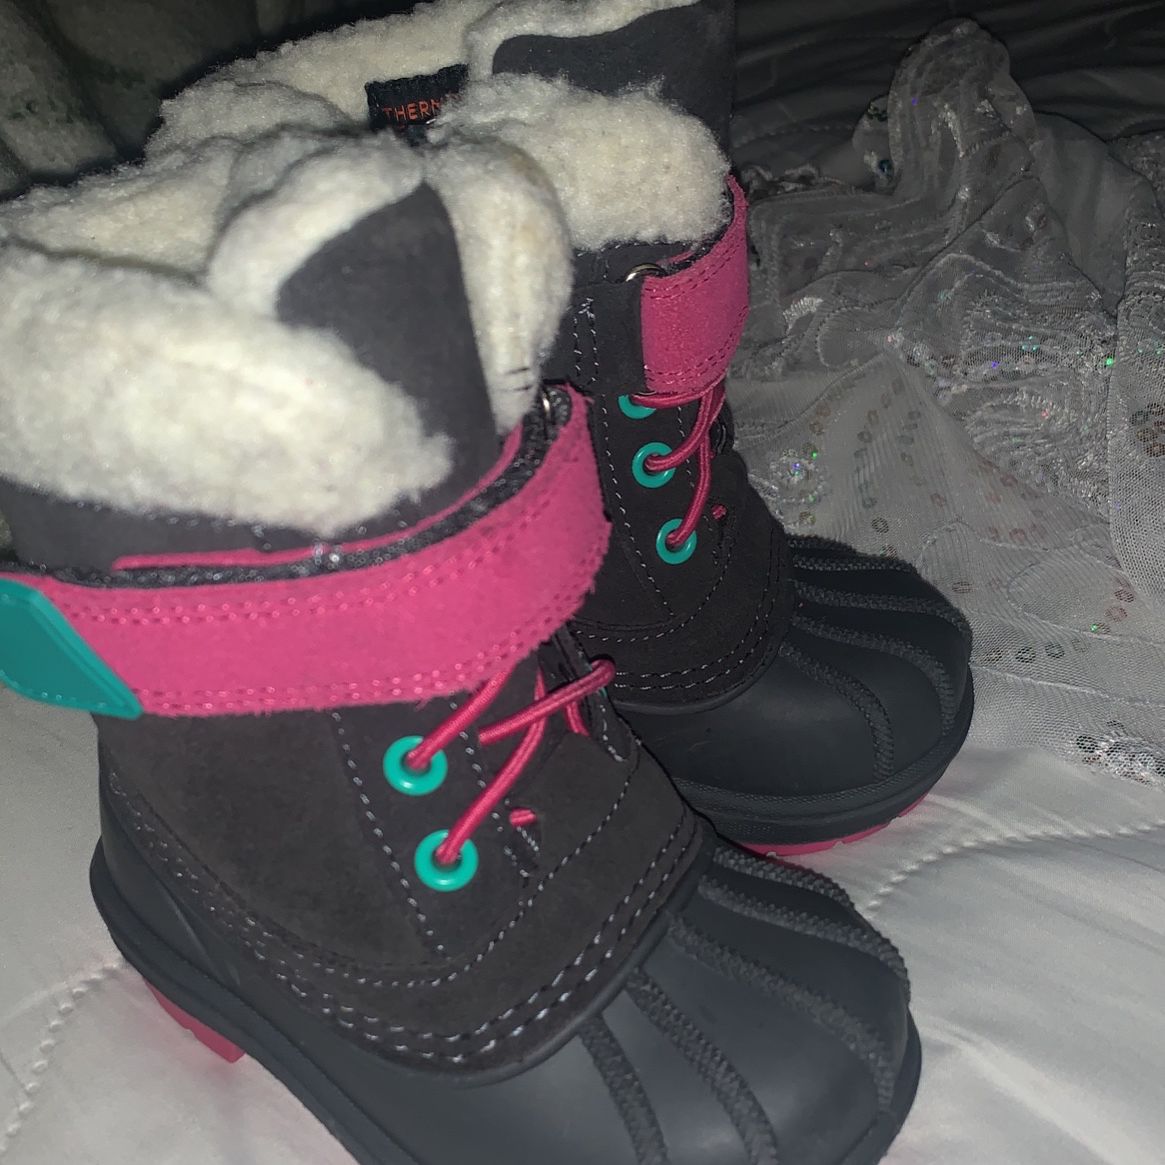 Snow Boots For Kid Size 5c Botas Para La Nieve Para Bebé Size 5c